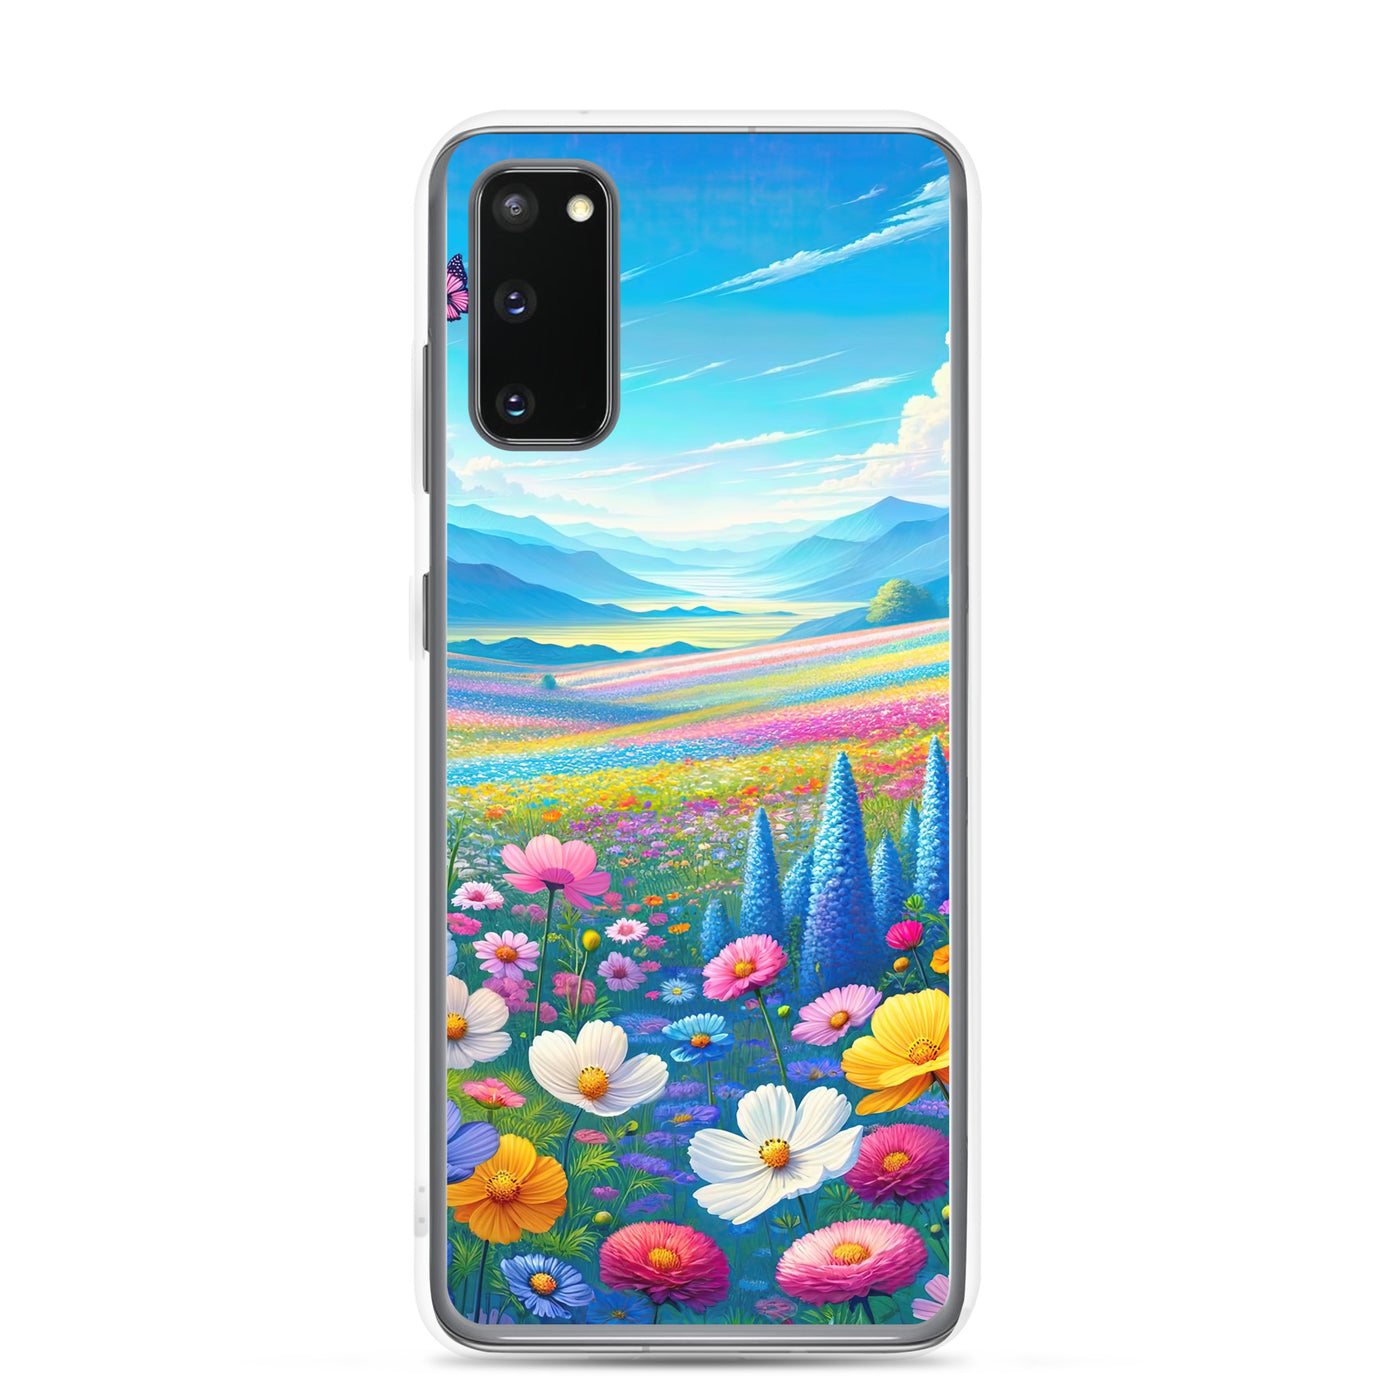 Weitläufiges Blumenfeld unter himmelblauem Himmel, leuchtende Flora - Samsung Schutzhülle (durchsichtig) camping xxx yyy zzz Samsung Galaxy S20